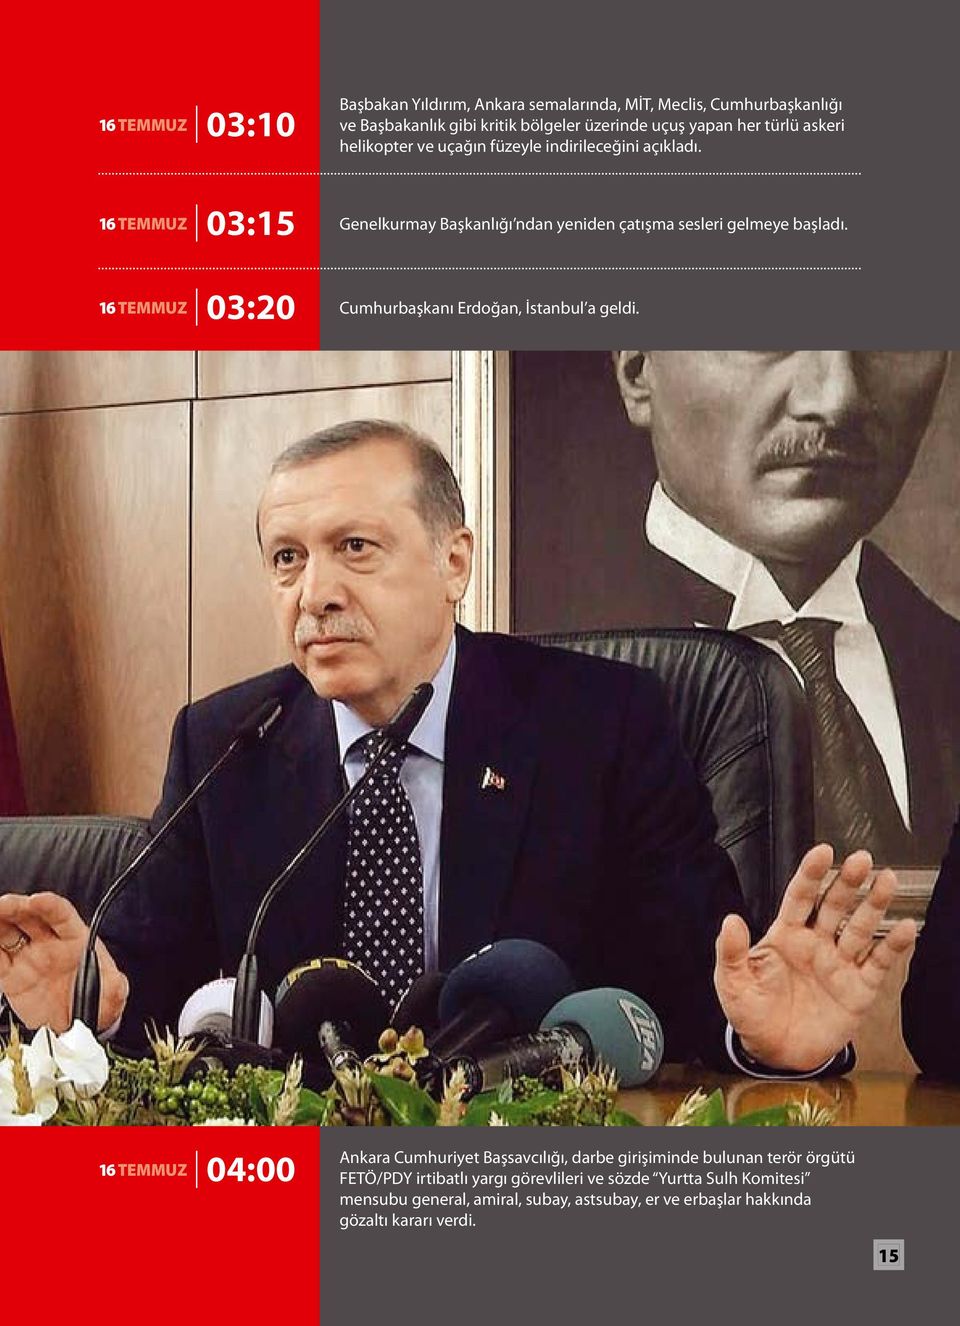 16 TEMMUZ 03:15 Genelkurmay Başkanlığı ndan yeniden çatışma sesleri gelmeye başladı. 16 TEMMUZ 03:20 Cumhurbaşkanı Erdoğan, İstanbul a geldi.